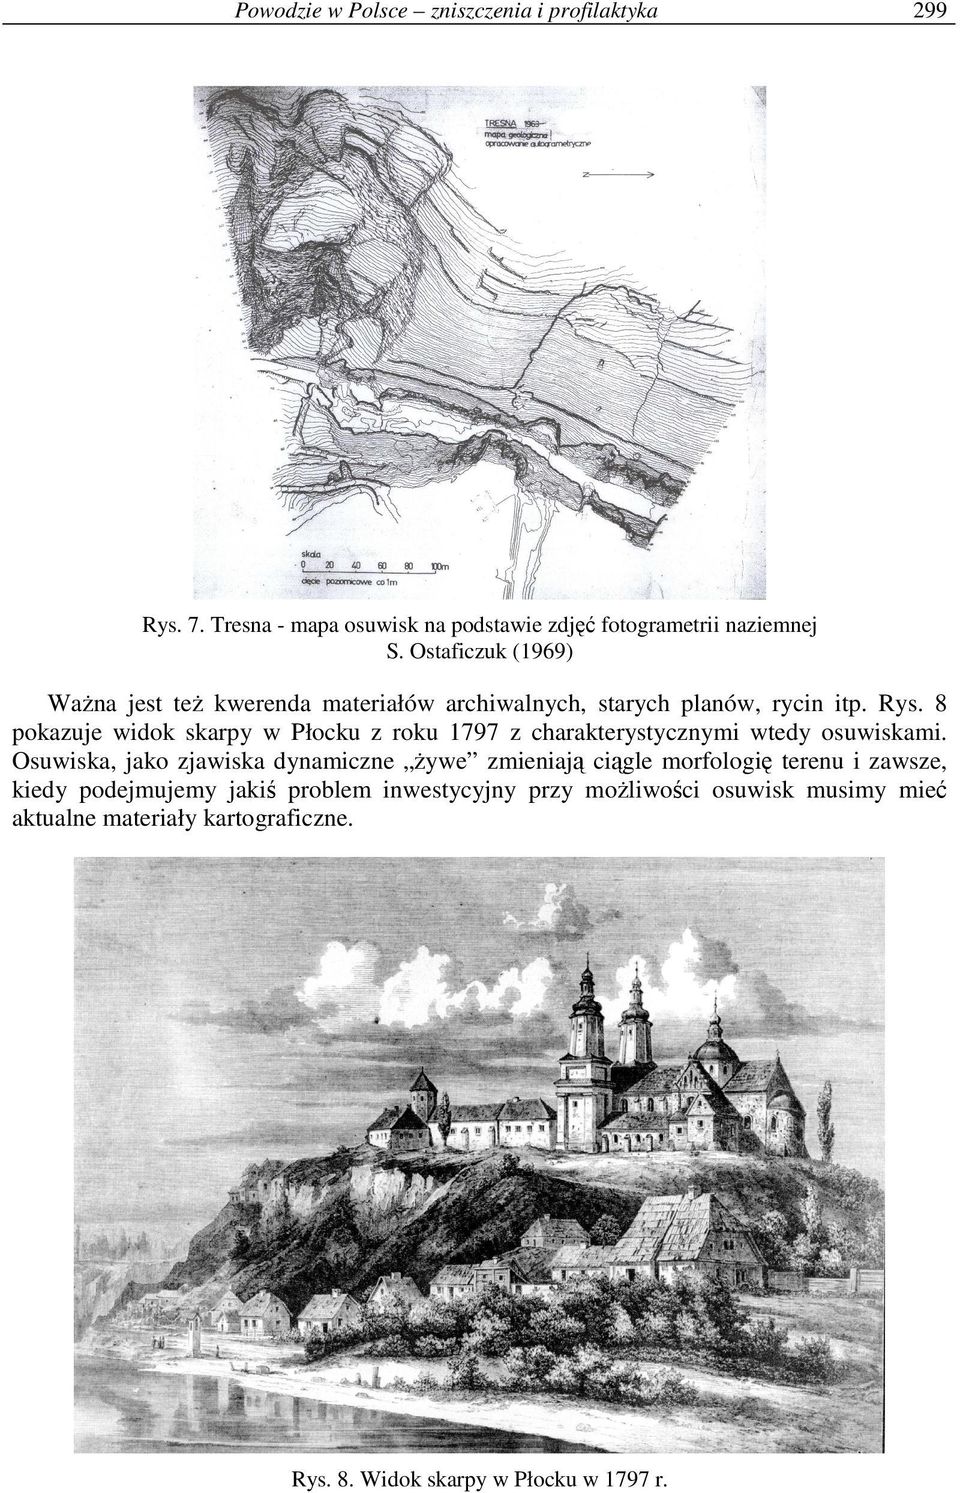 8 pokazuje widok skarpy w Płocku z roku 1797 z charakterystycznymi wtedy osuwiskami.